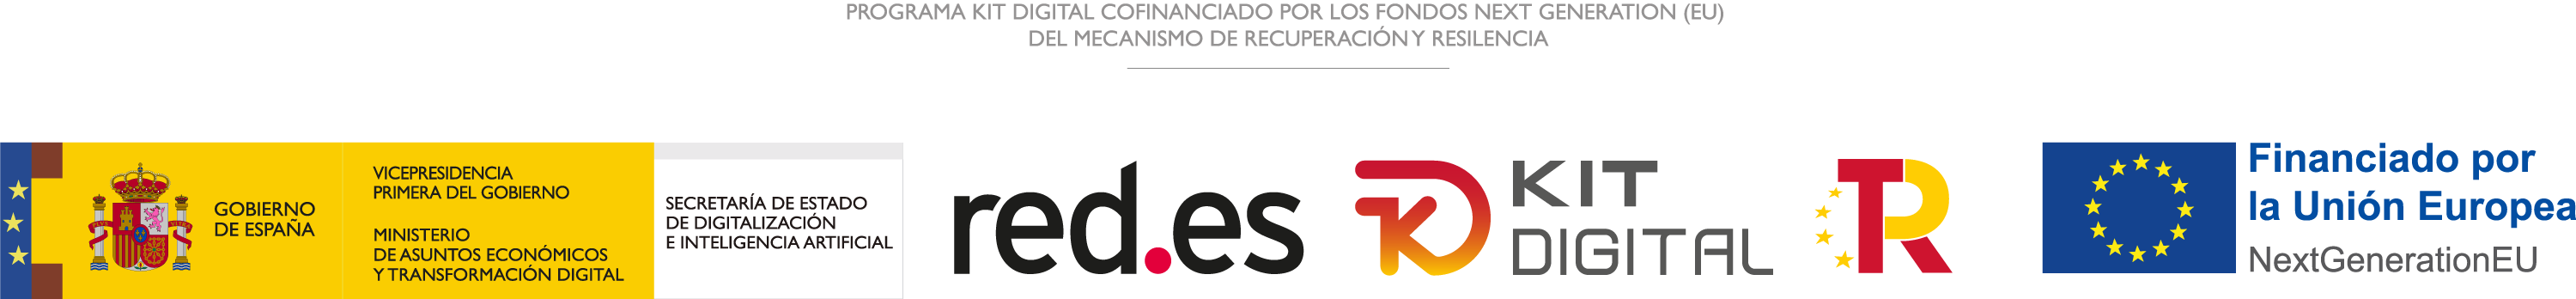 Logotipos Gobierno de España, red.es, Kit digital y Fondos UE